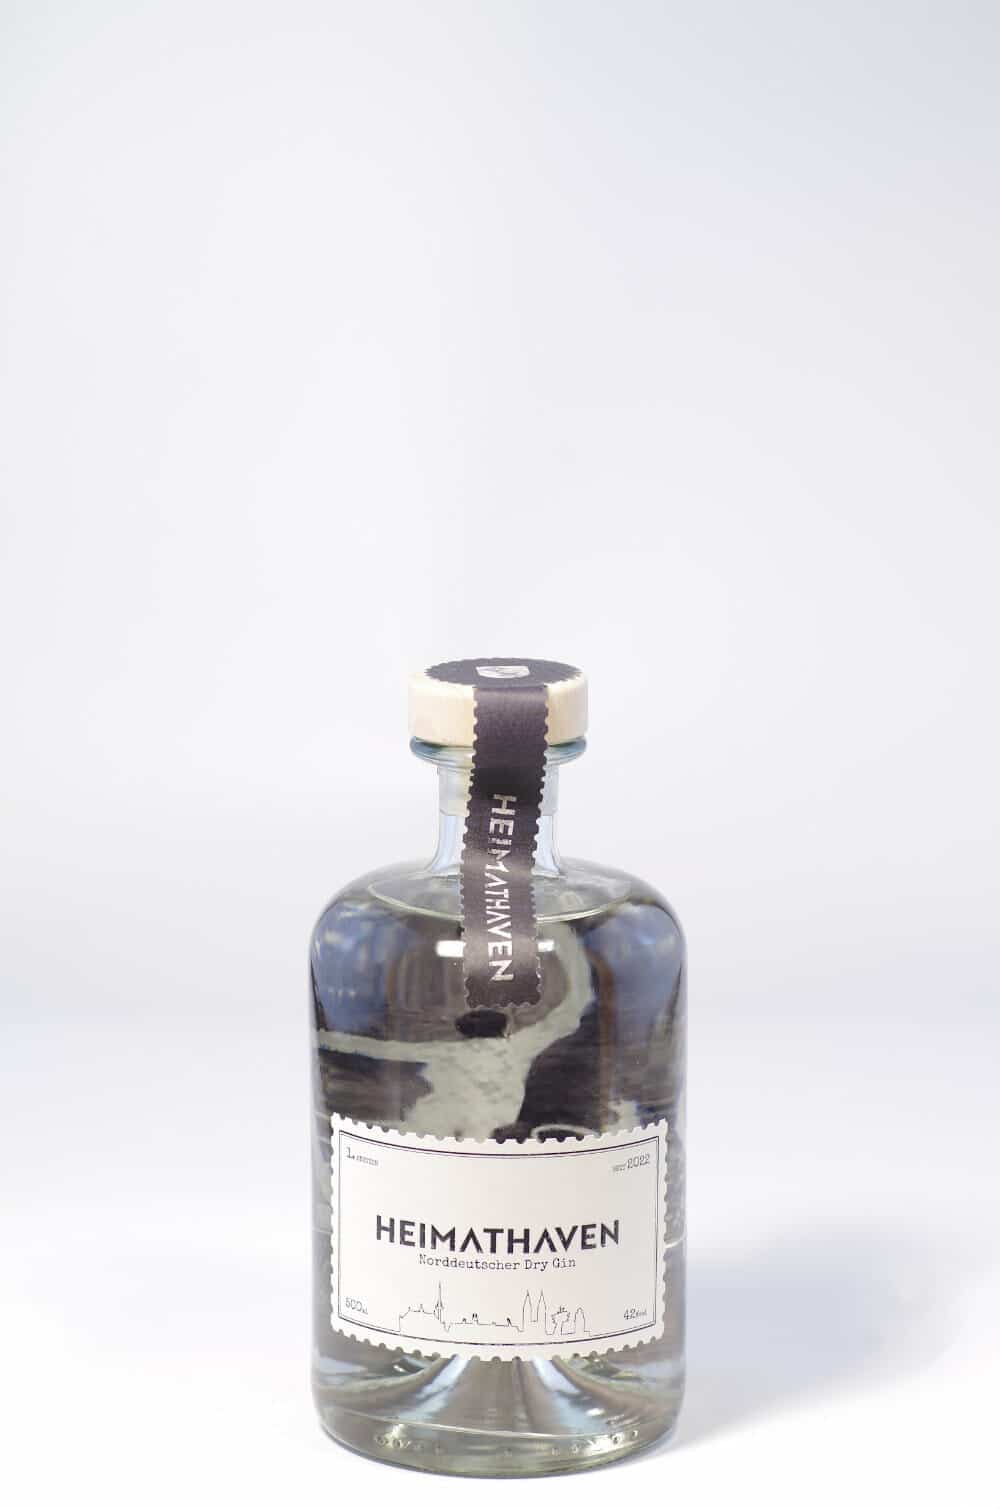 Heimathaven Gin Bremen Edition